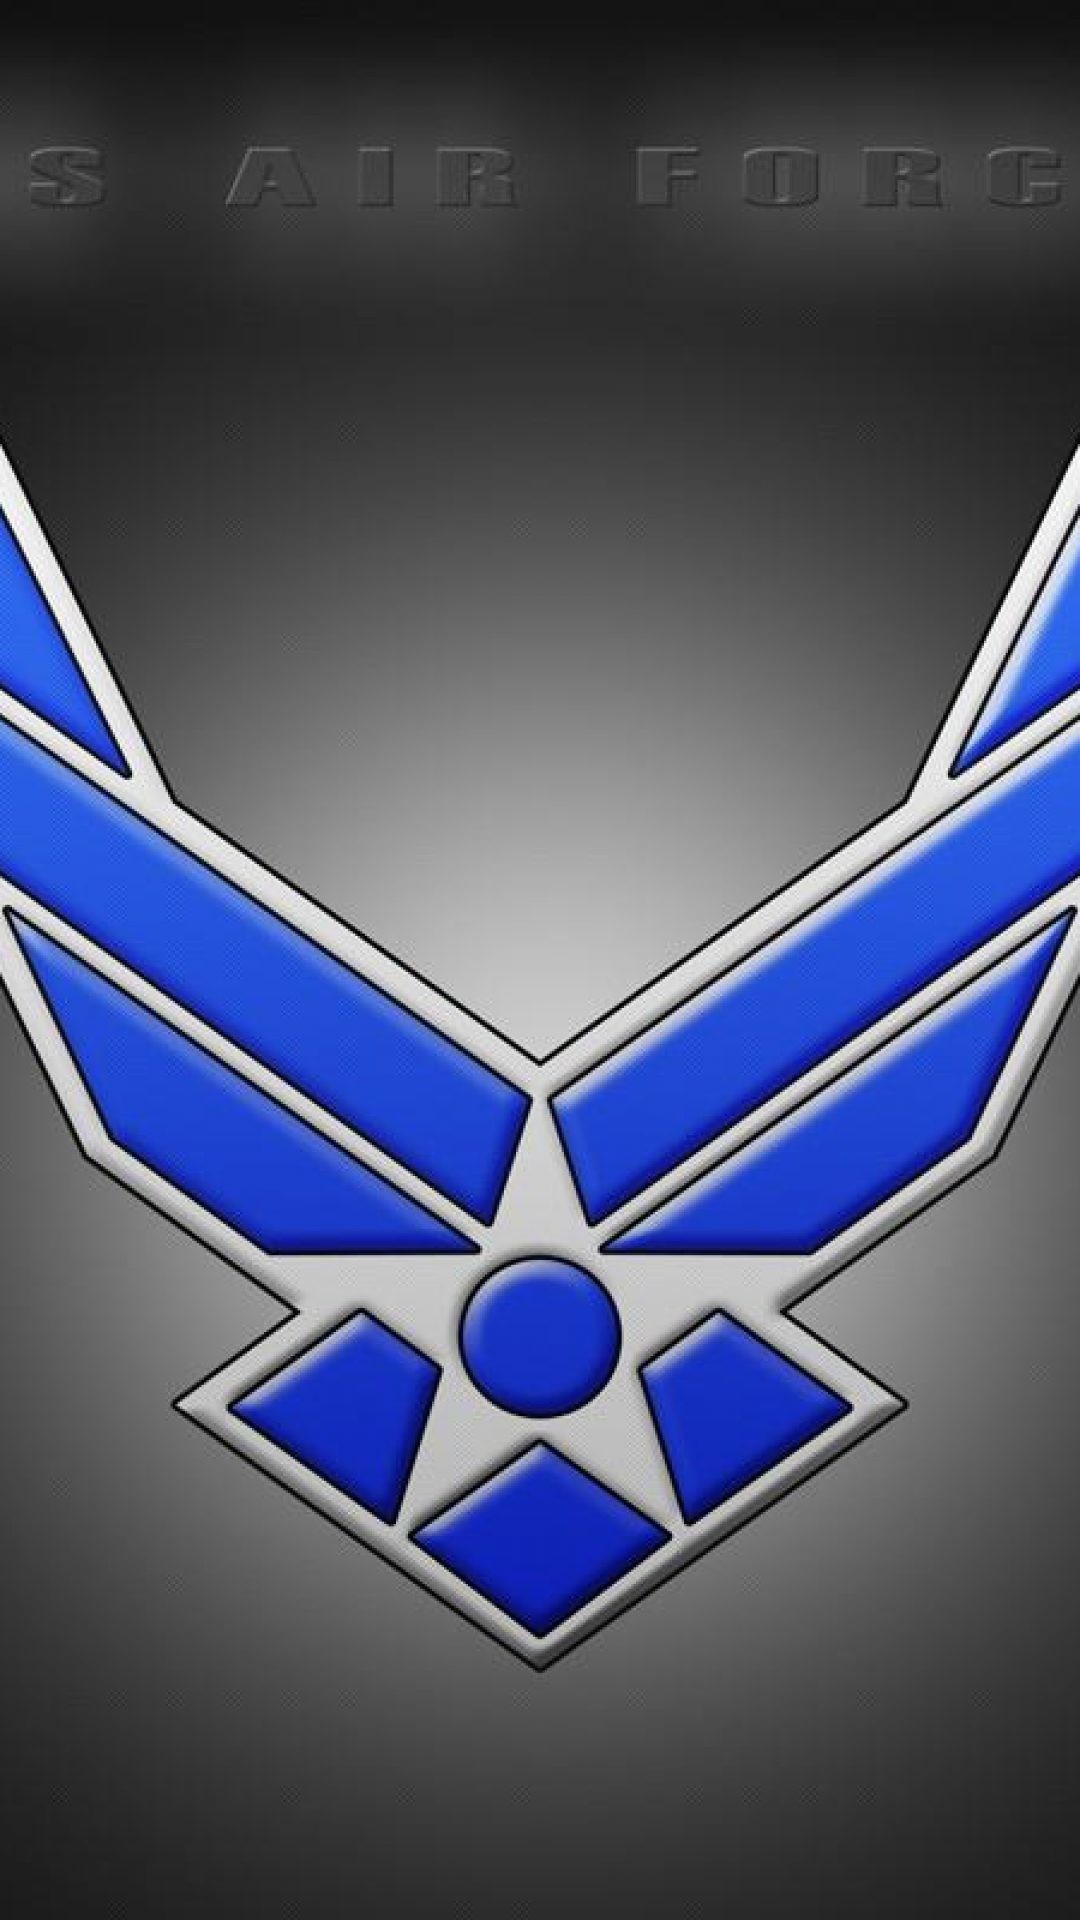 インド空軍のロゴのhdの壁紙,青い,象徴,エレクトリックブルー,シンボル,グラフィックス